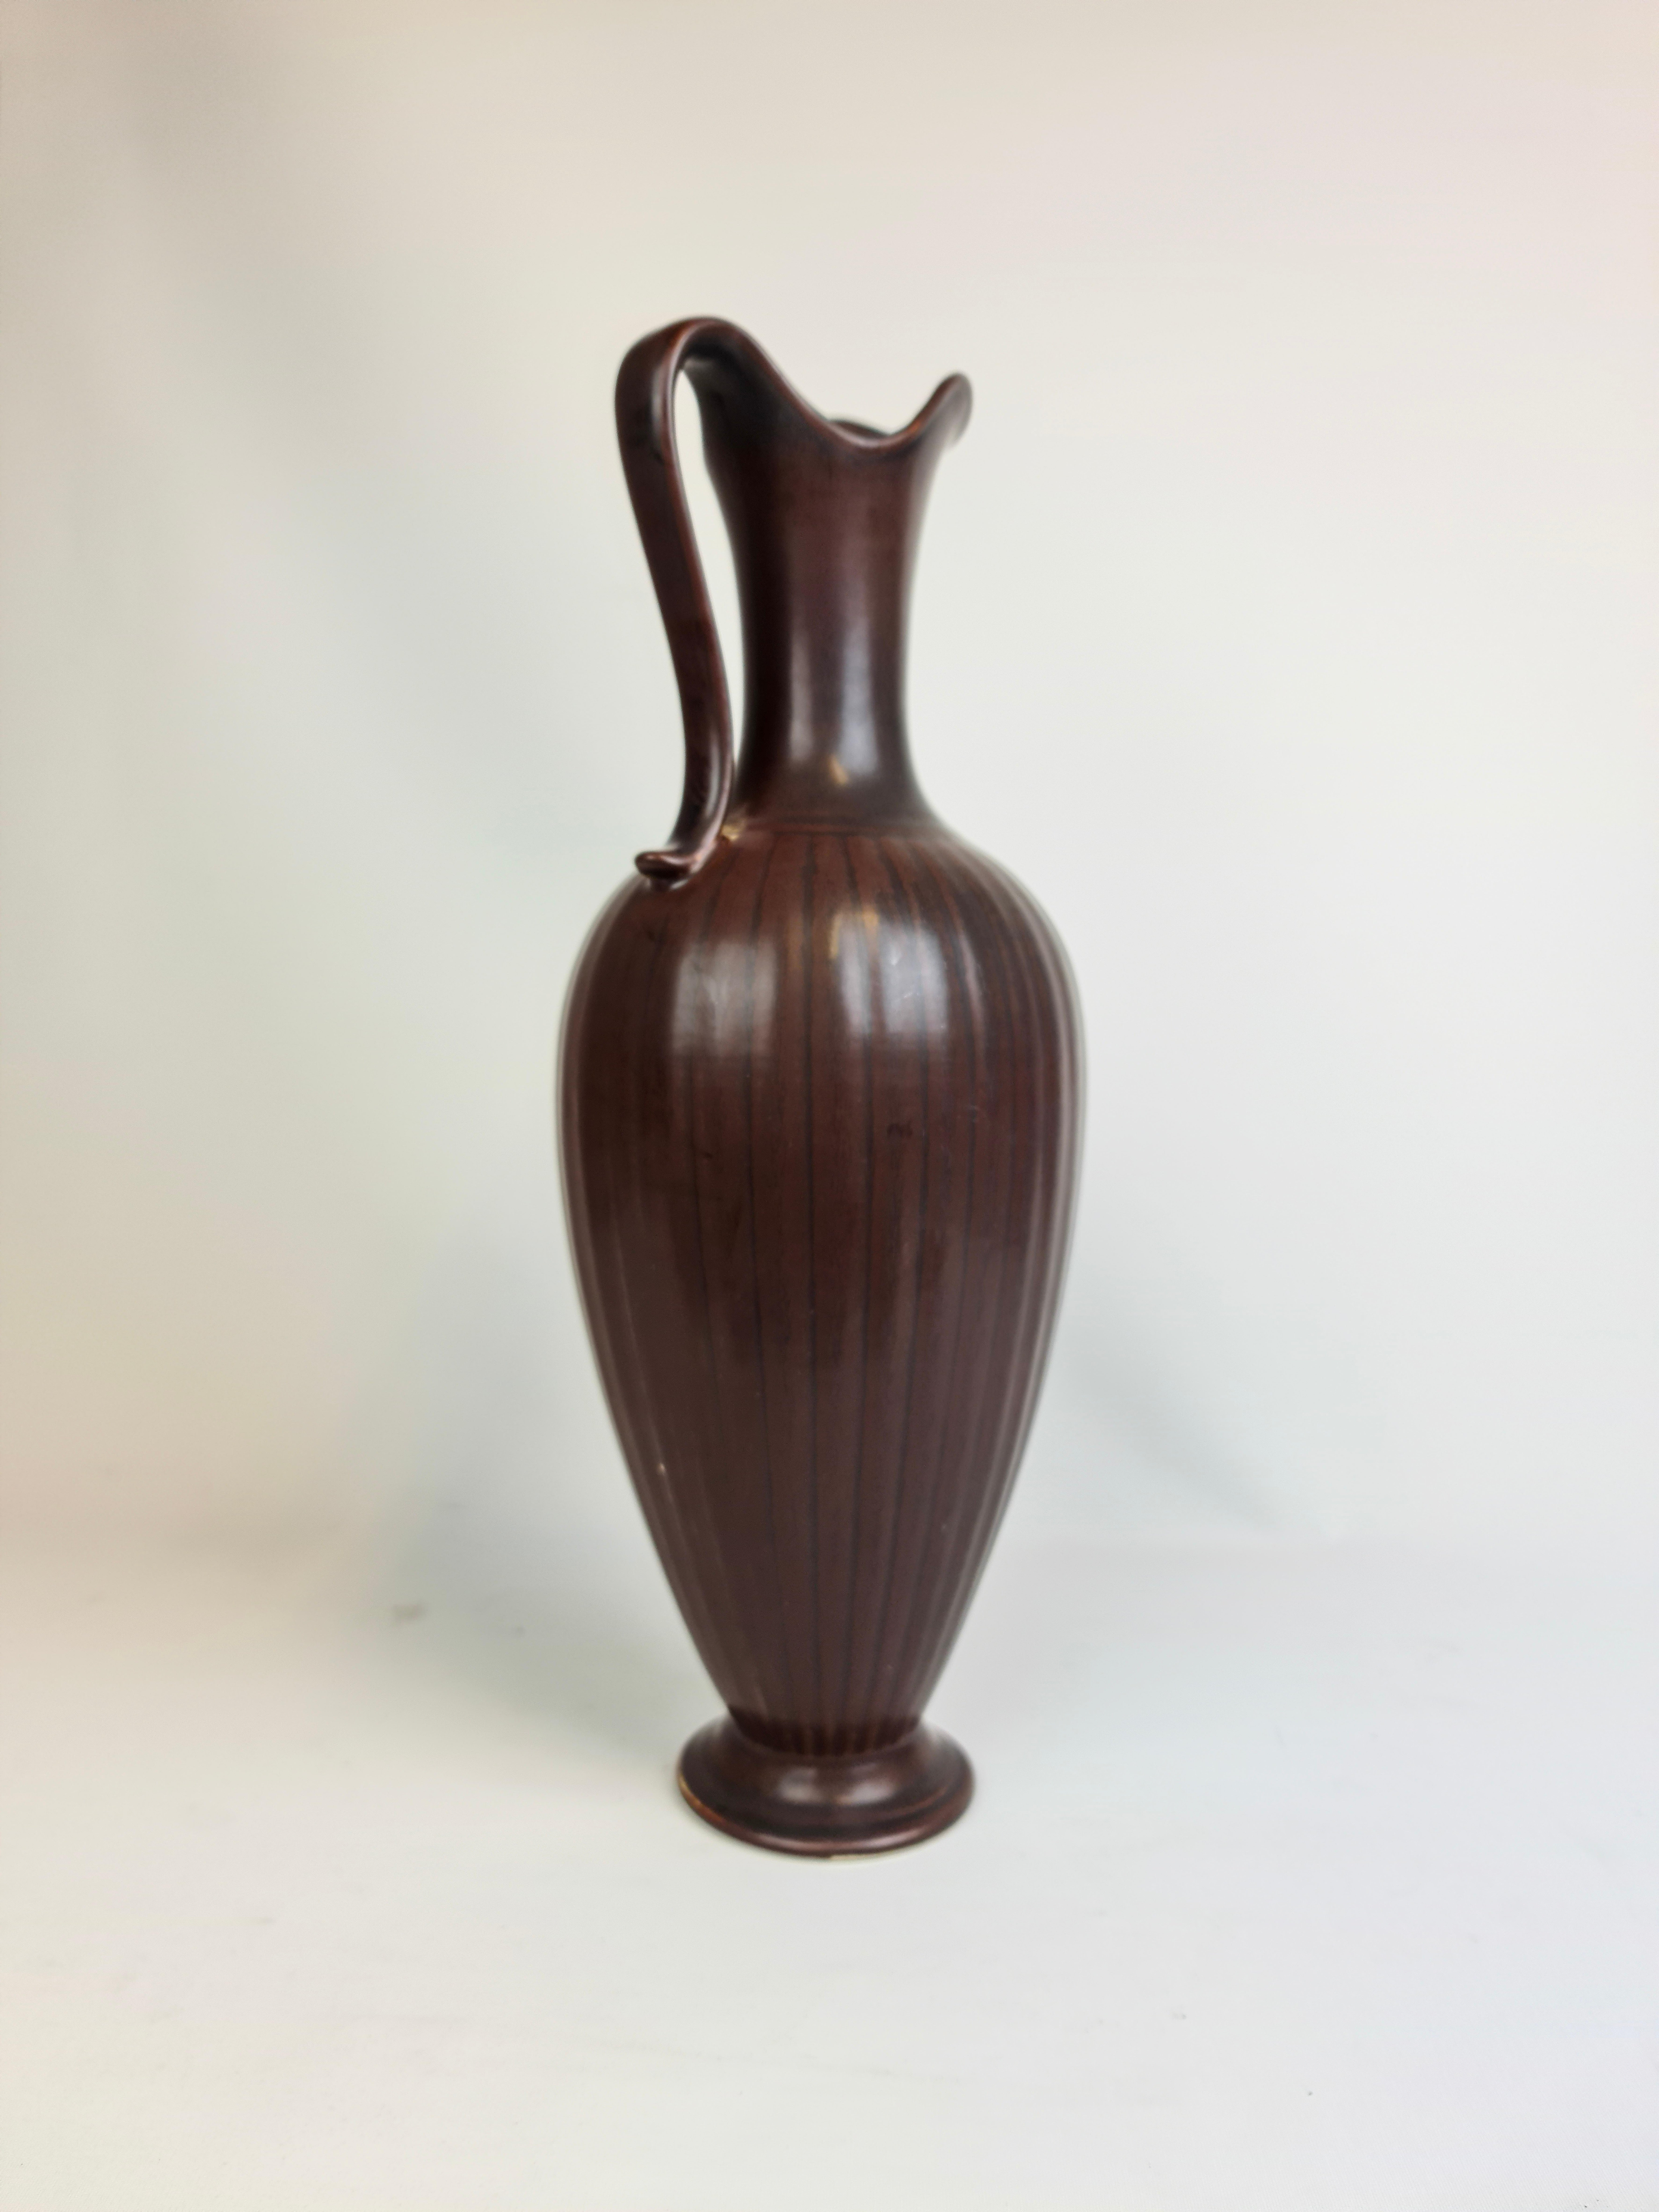 Eine prächtige große Vase von Rörstrand und dem Hersteller/Designer Gunnar Nylund. Hergestellt in Schweden um die Mitte des Jahrhunderts. Schönes Braun glasiert in wechselnden dunklen Farben. 

Guter Vintage-Zustand, kleine Verluste in der